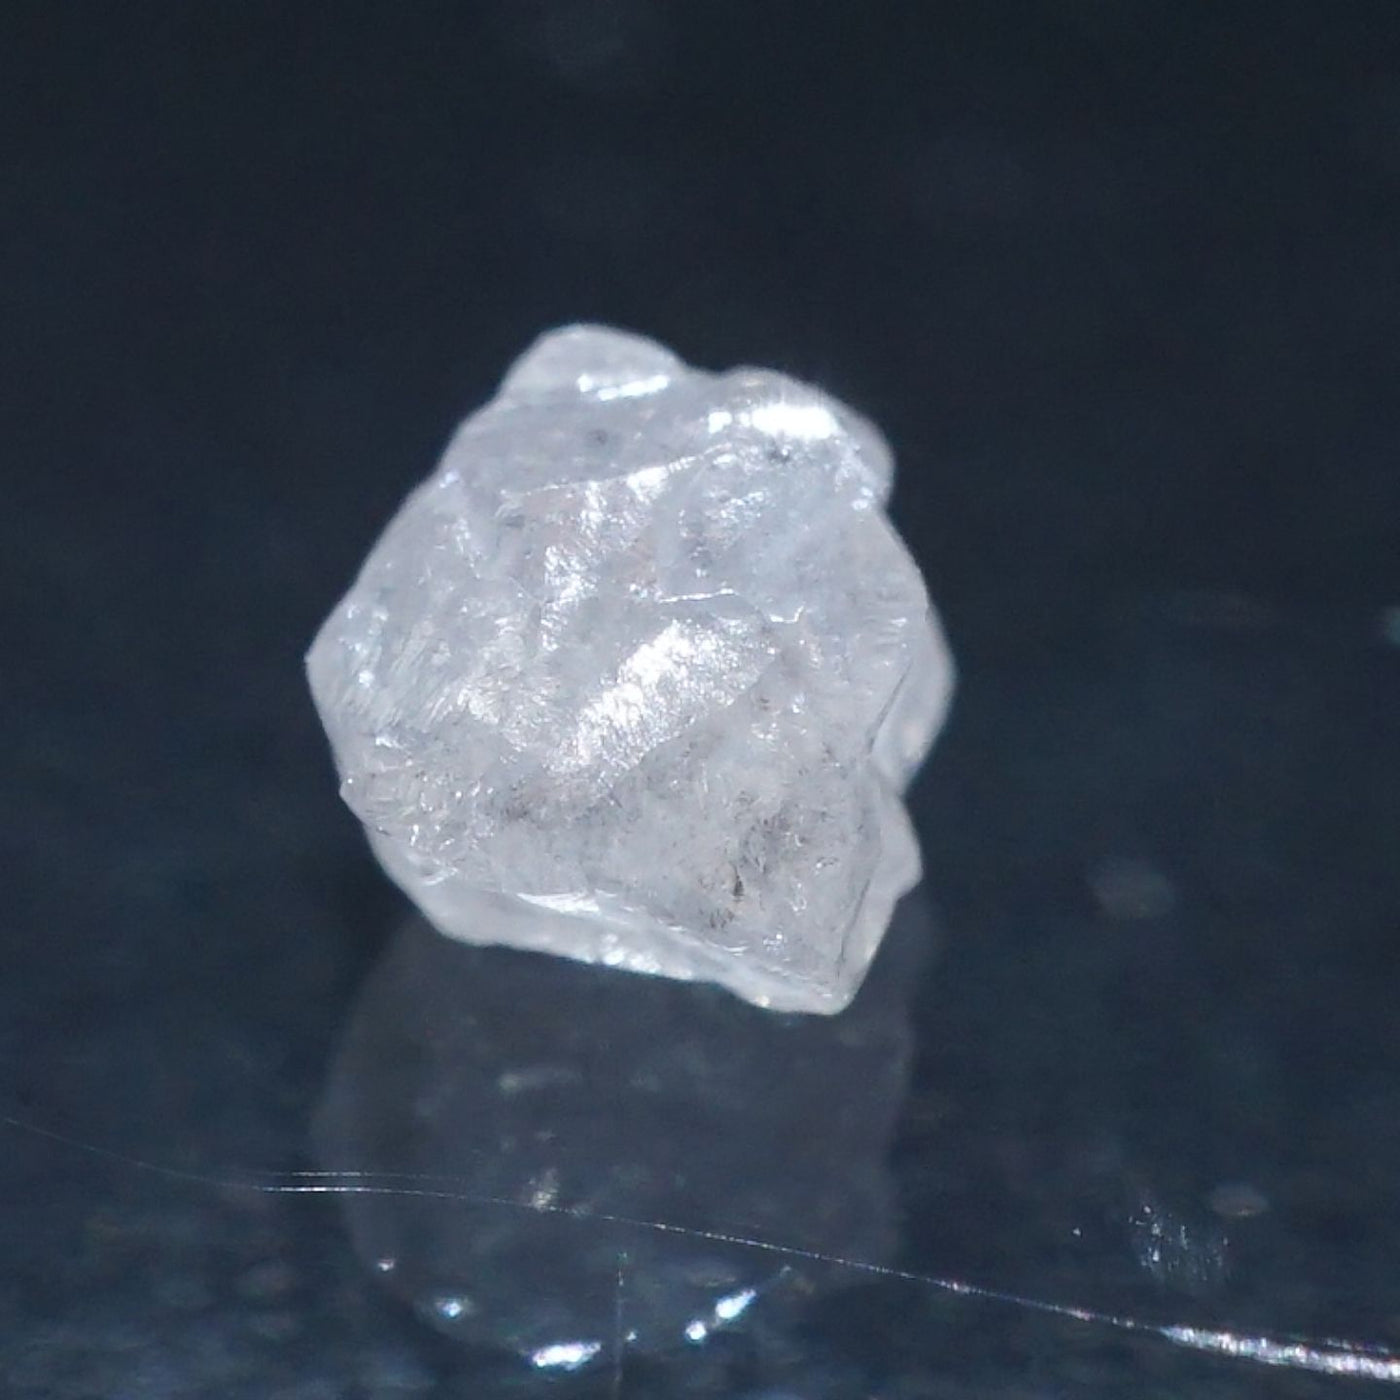 コンゴ産 ダイヤモンド原石 (Diamond) – 天然石ハッピーギフト